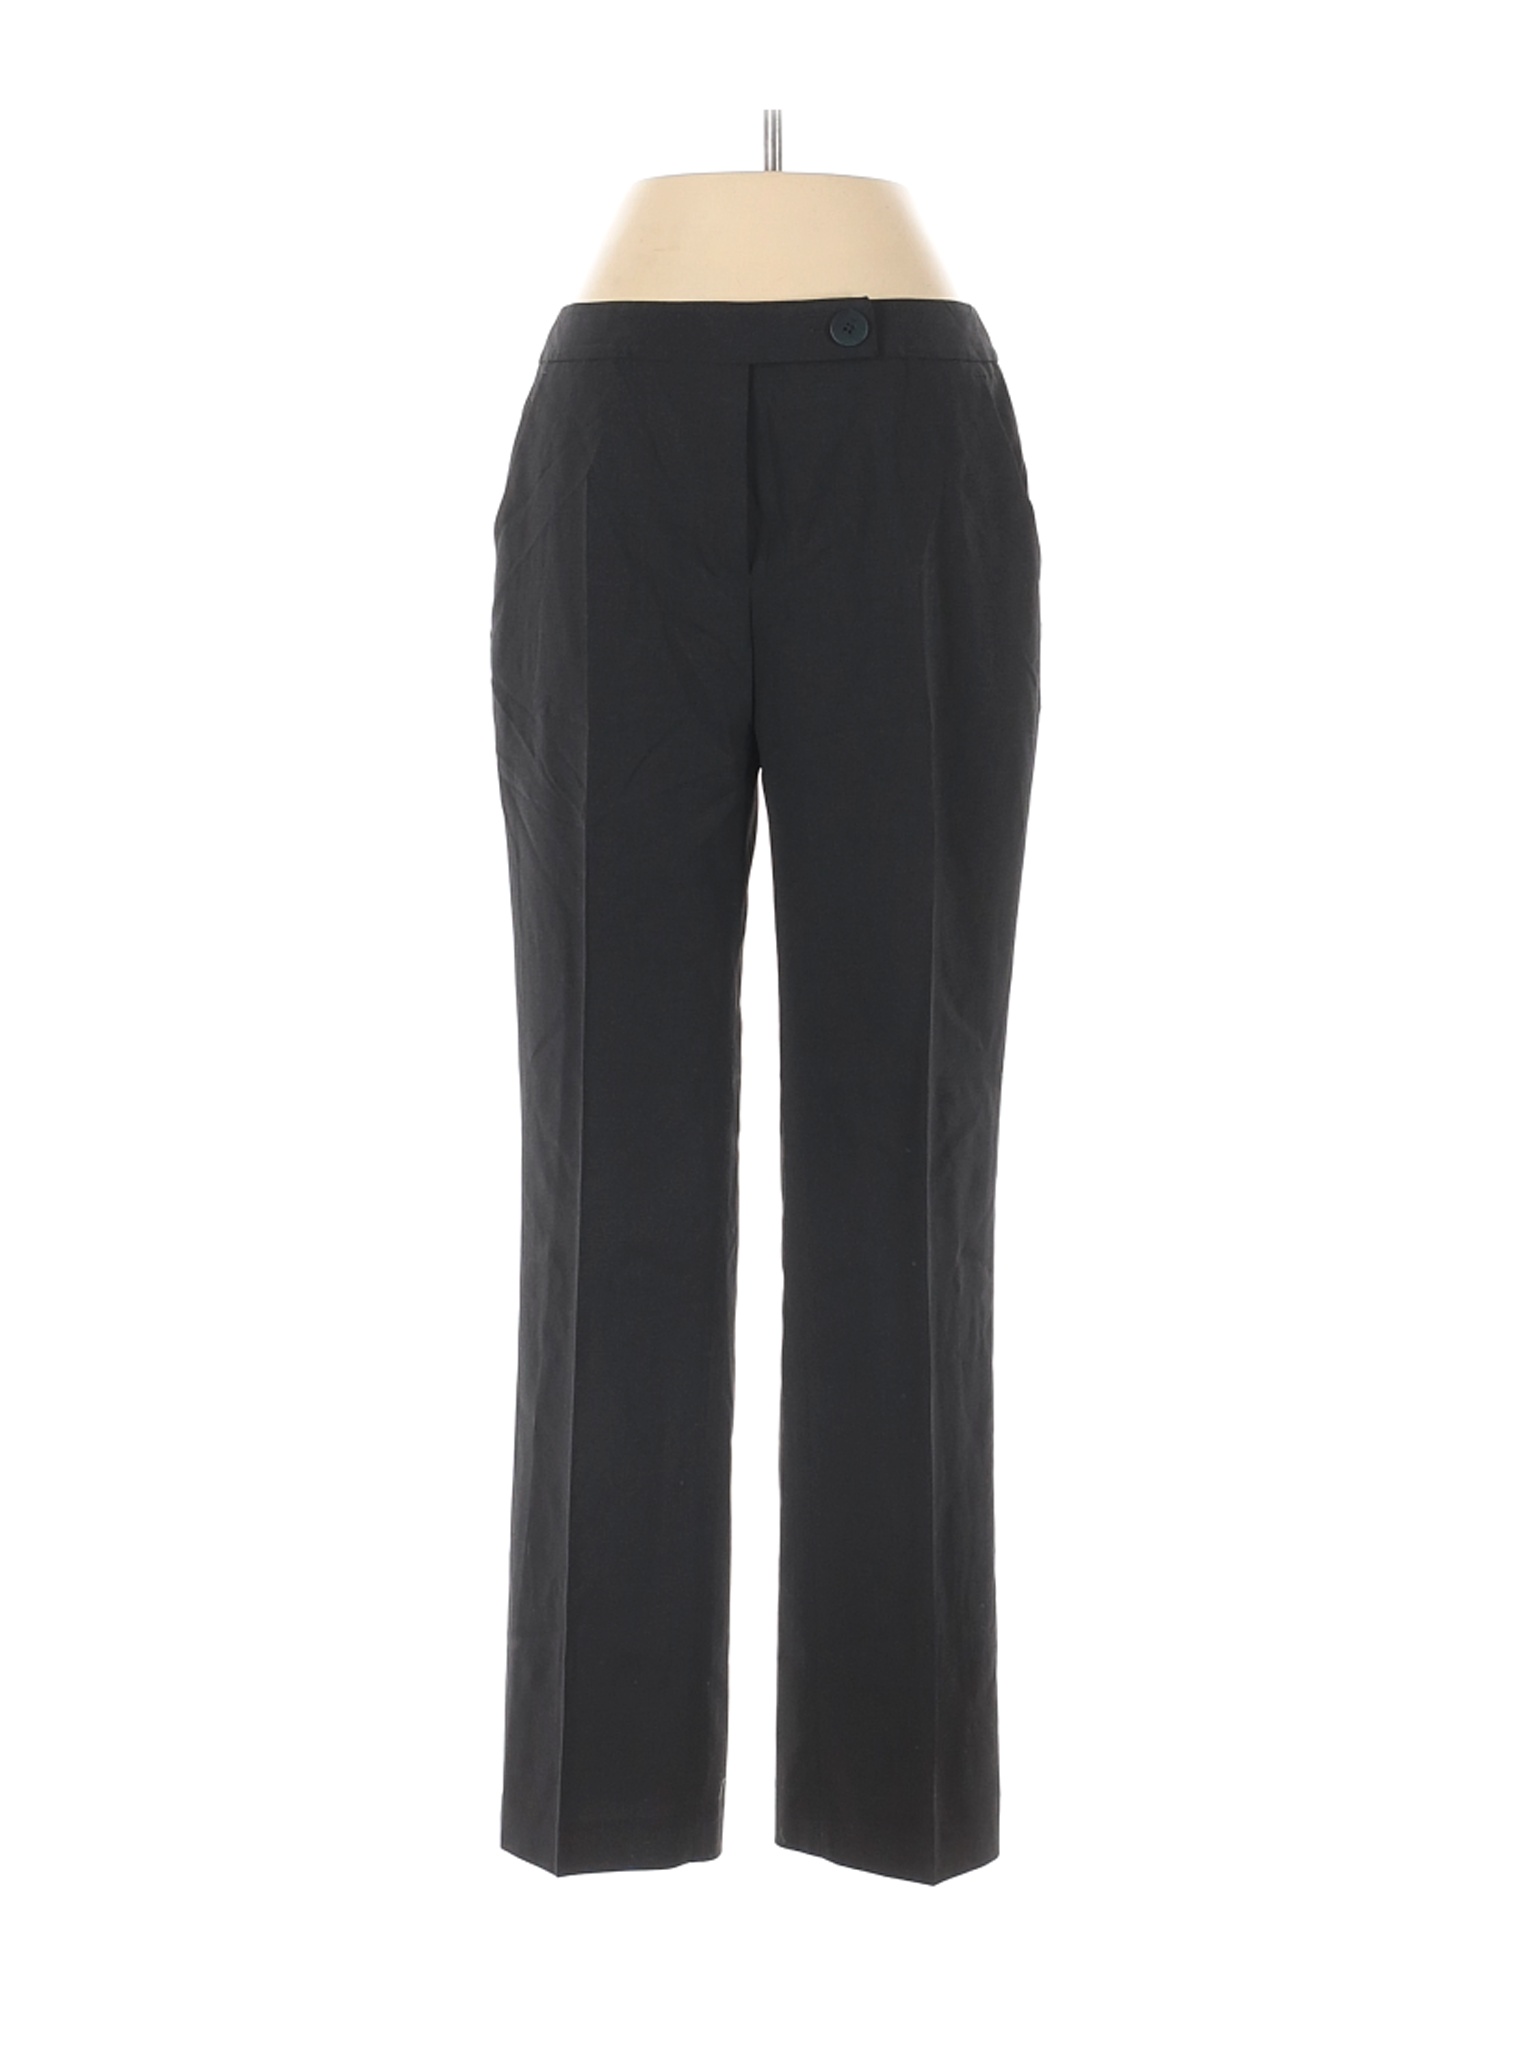 Anne Klein Women Black Dress Pants 4 Petites | eBay